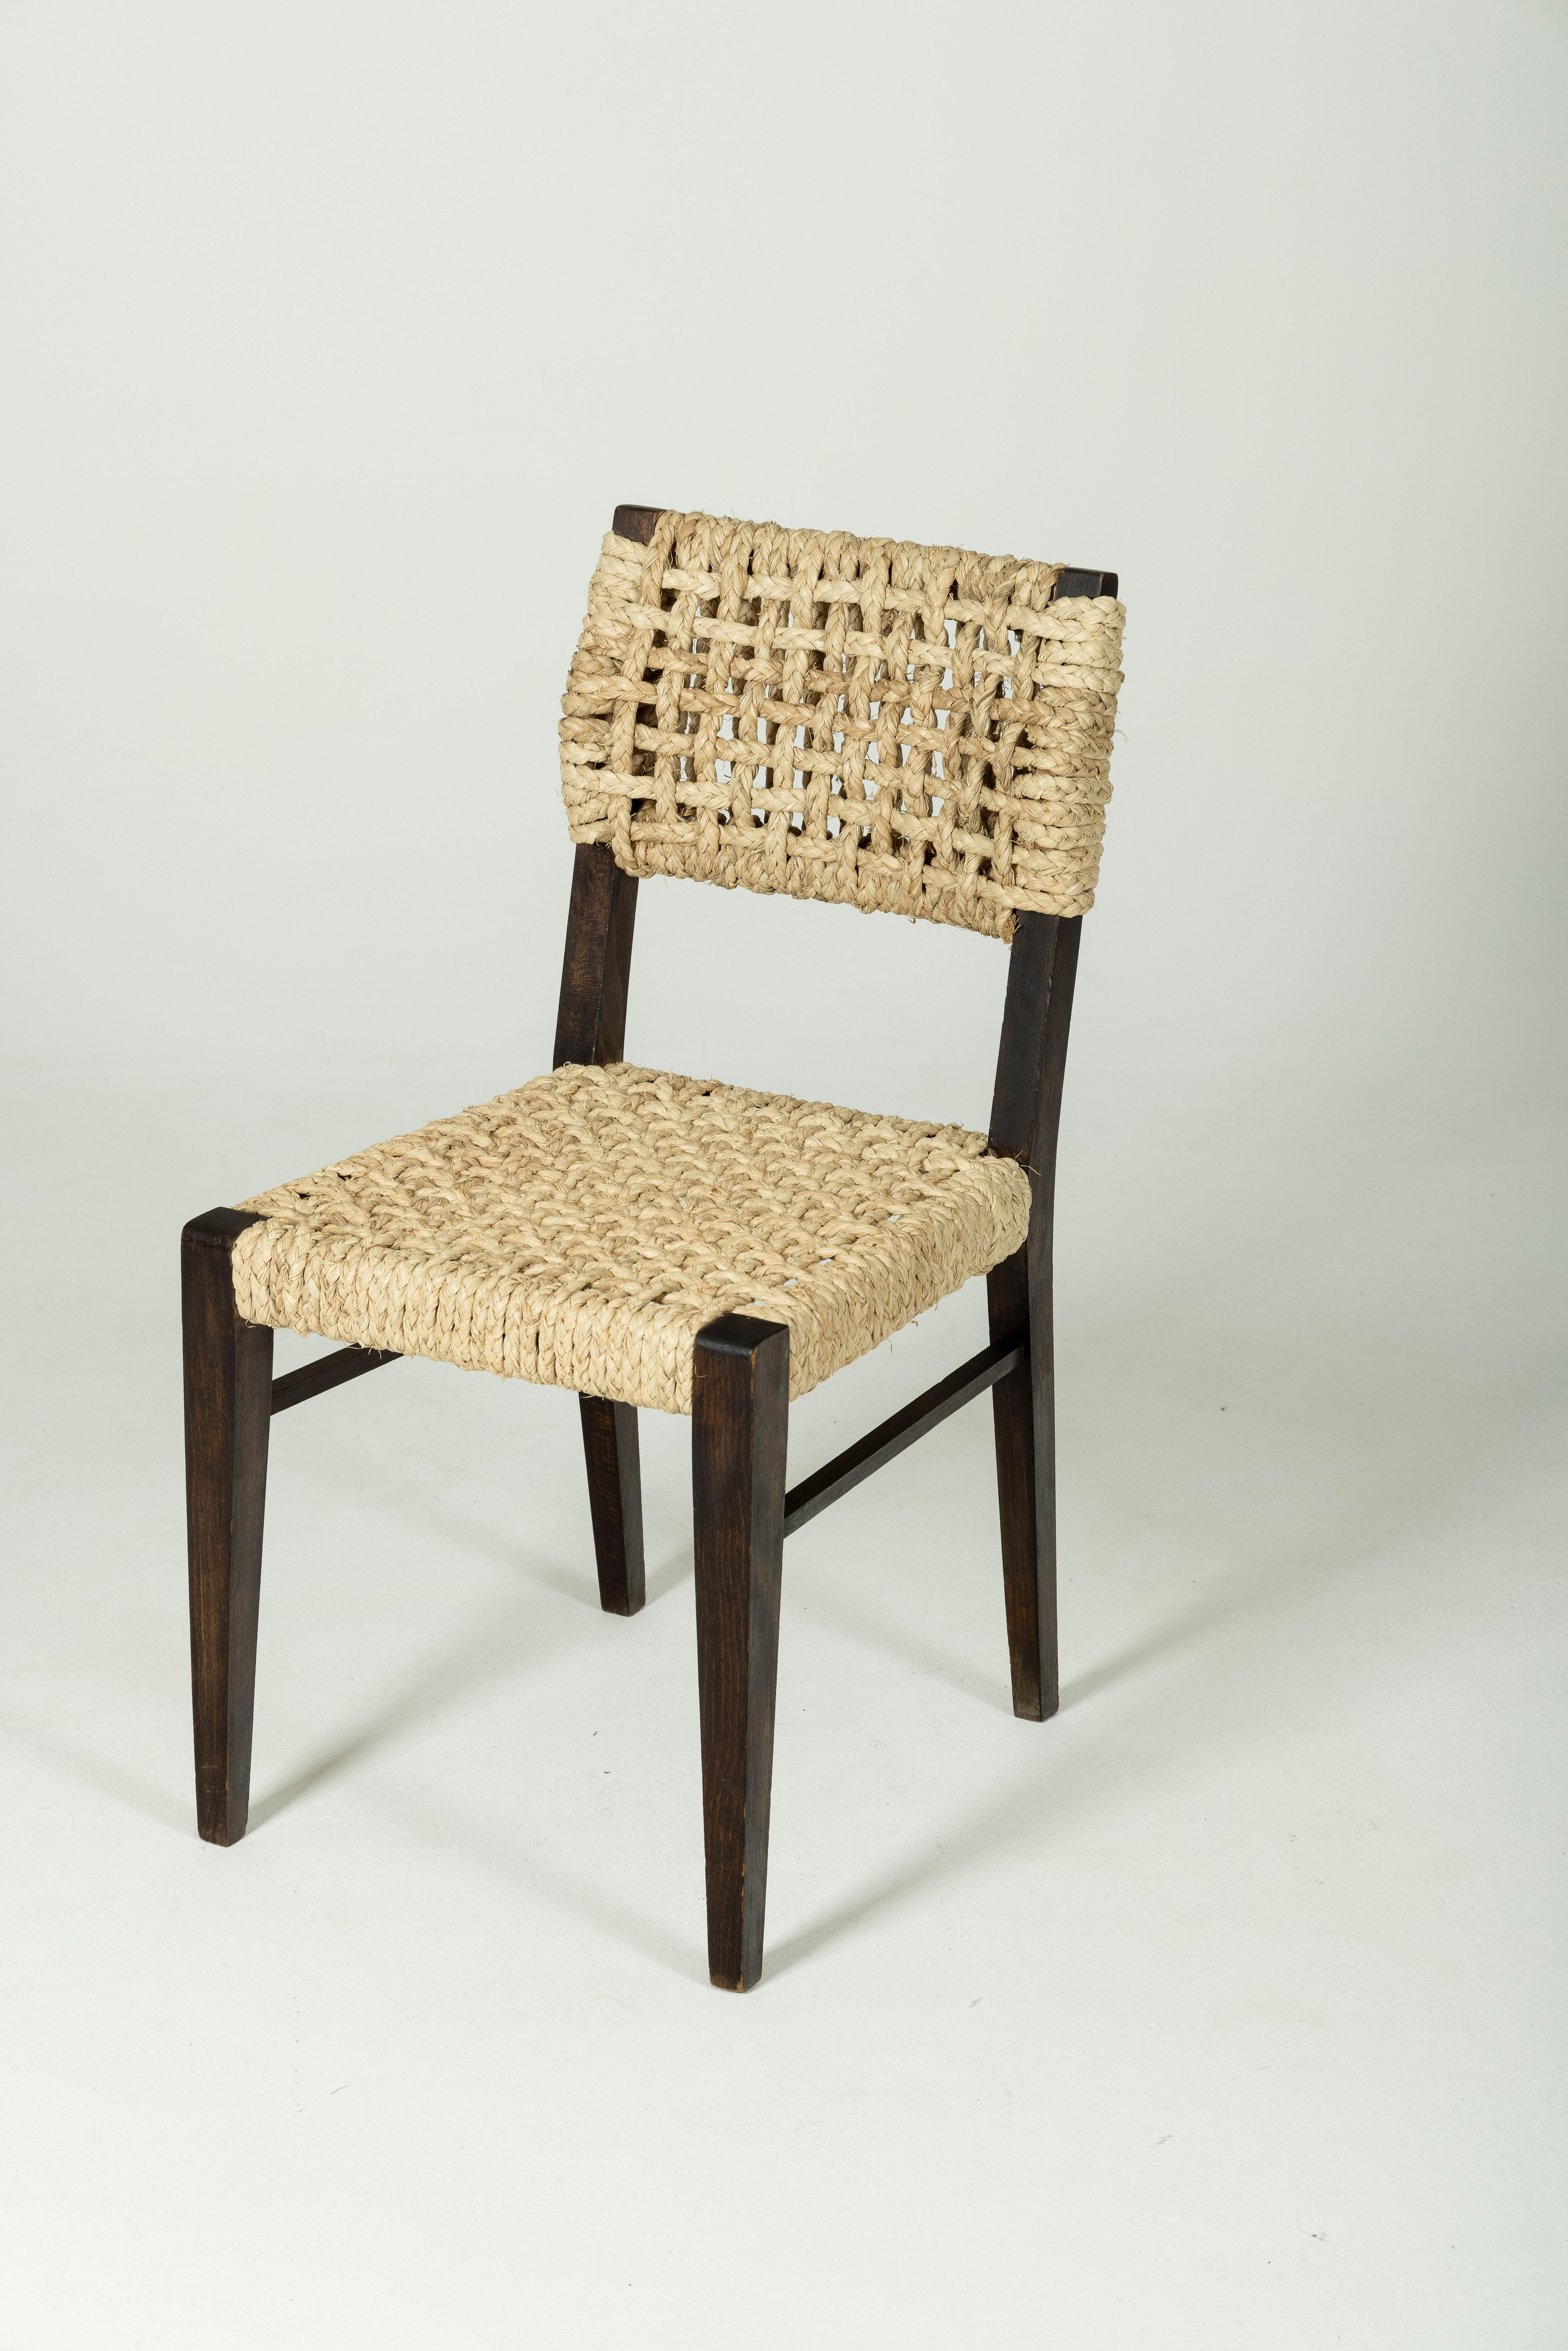 Seilstuhl des Designerpaars Adrien Audoux und Frida Minet für Vibo Vesoul, aus den 1950er Jahren. Sitz und Rückenlehne sind aus Hanf, das Gestell ist aus dunklem Holz. In sehr gutem Vintage-Zustand.
LP372